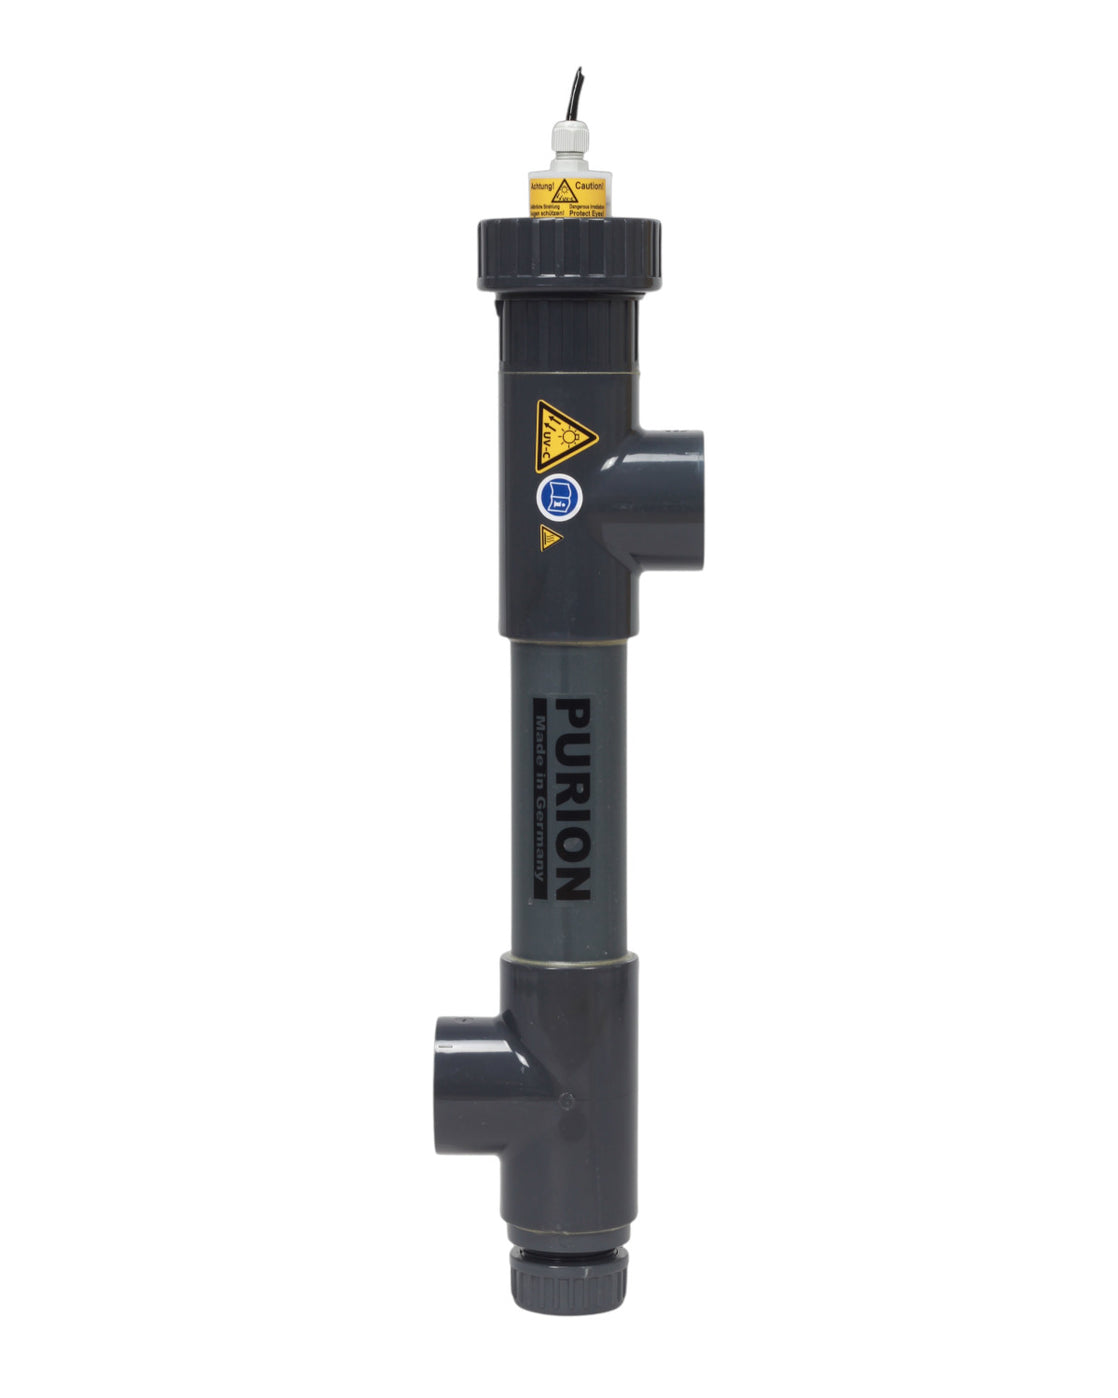 Ein schwarzes PURION 1000 PVC-U-Rohr mit einem gelben PURION GmbH-Ventil darauf, das zur UV-C-Reinigung verwendet wird.